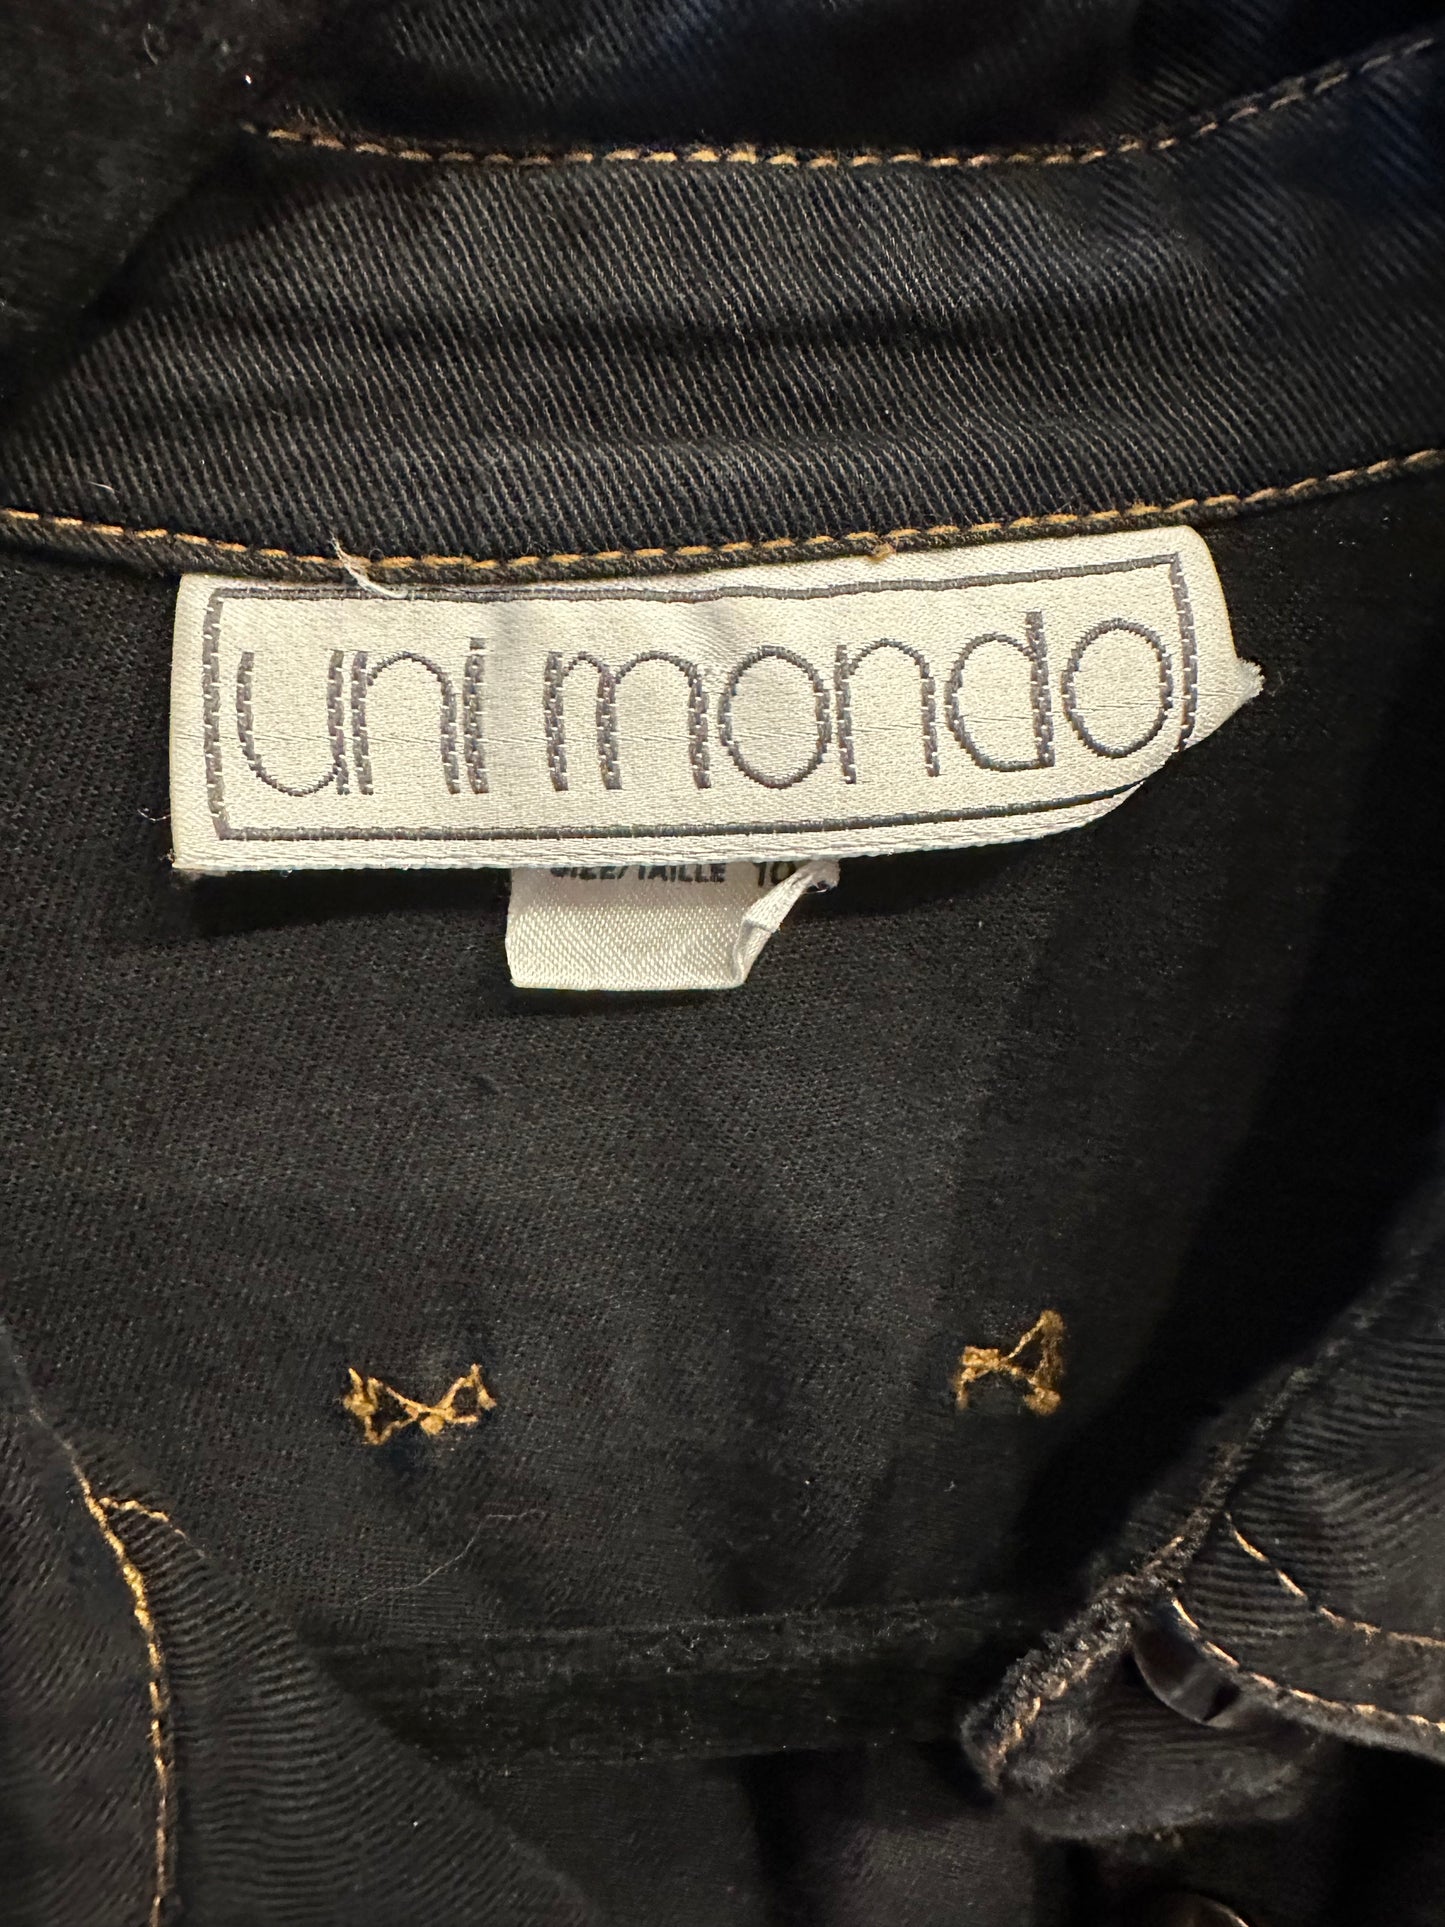 90s 'Uni Mondo' Dark Wash Denim Dress / Medium